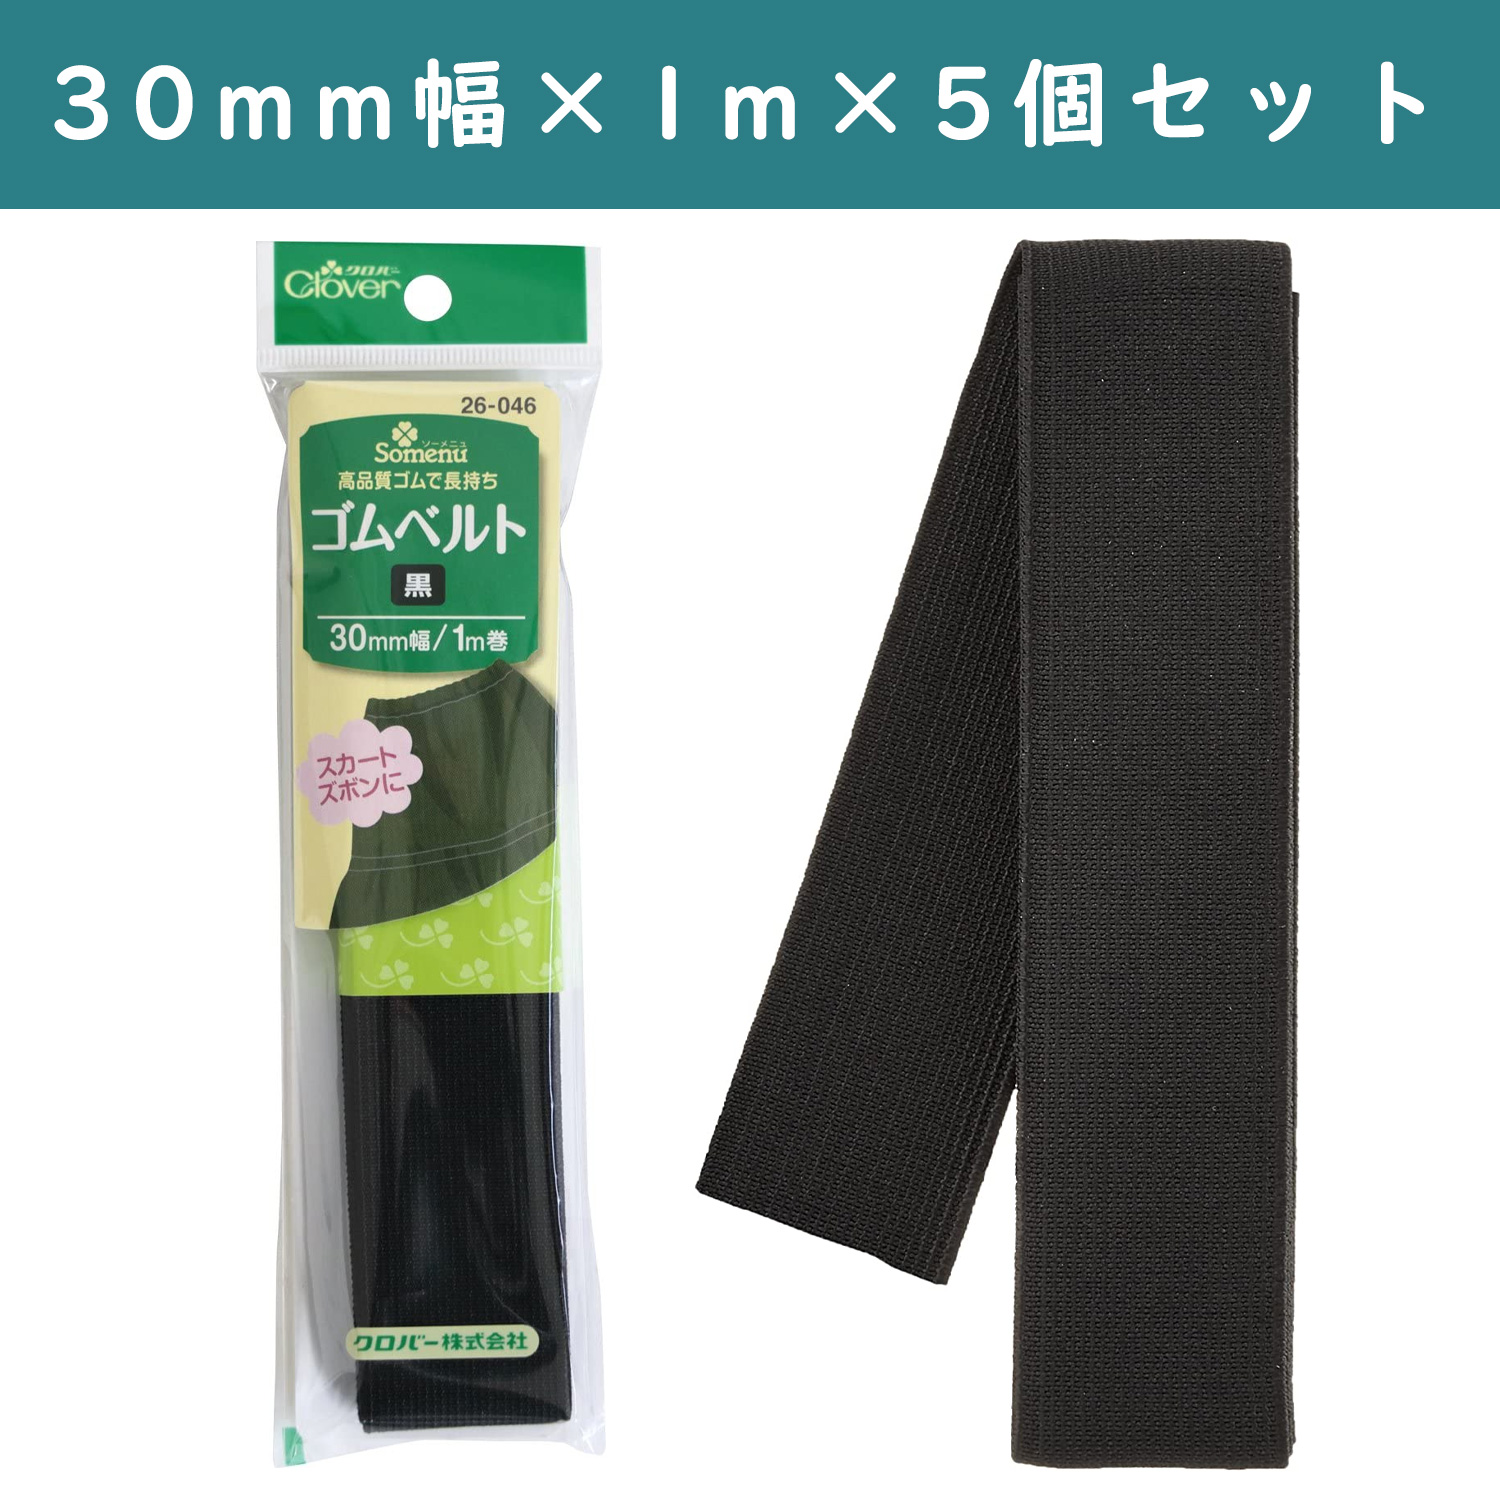 ■【5個】CL26-046-5set ゴムベルト 30mm幅 黒 ×5個 (セット)